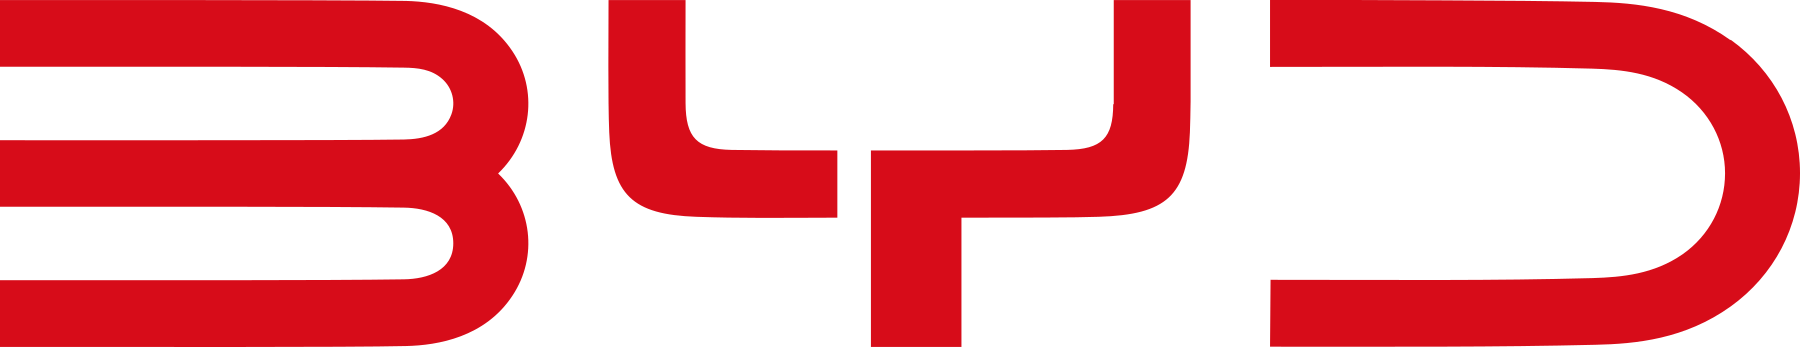 BYD logo